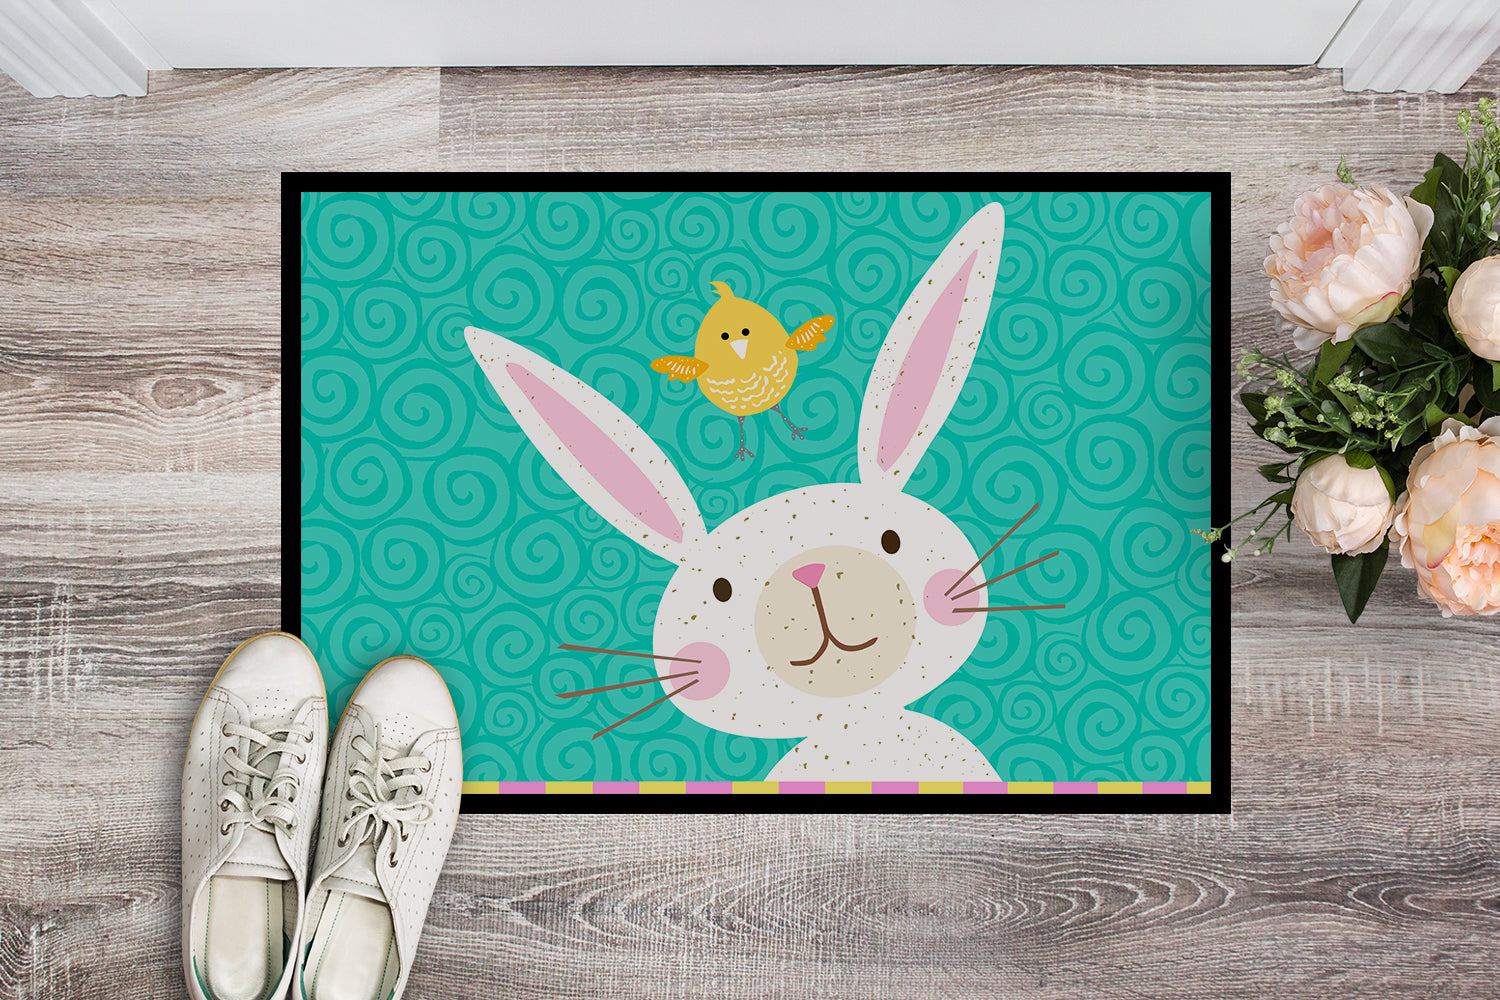 Happy Easter Rabbit Indoor or Outdoor Mat 18x27 VHA3032MAT - the-store.com